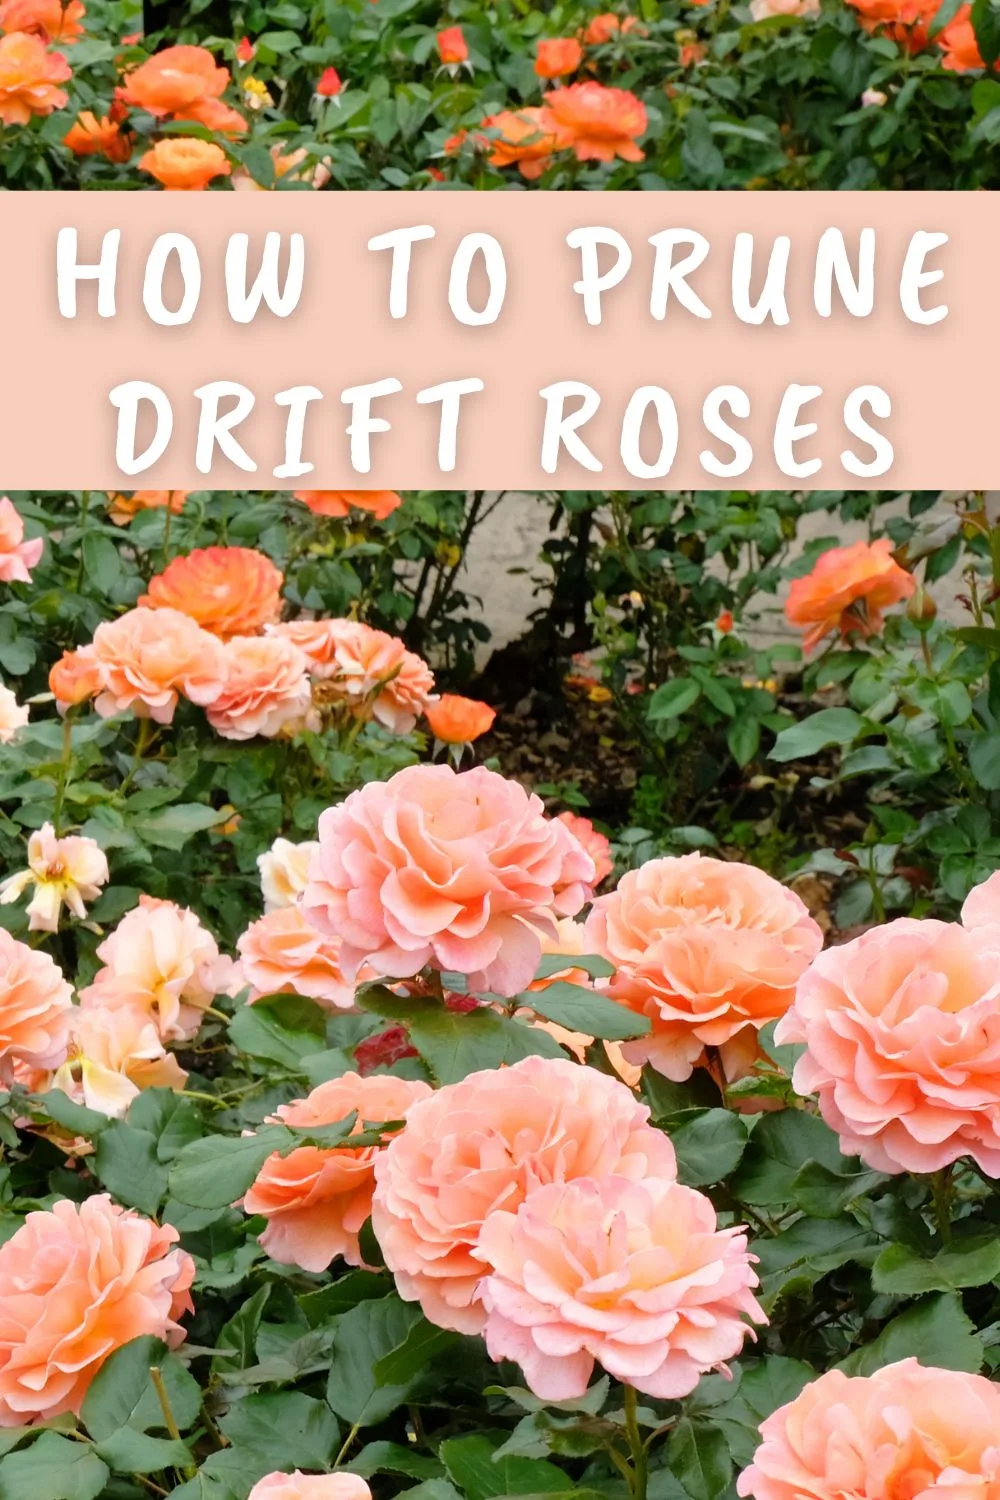 How to prune drift roses.